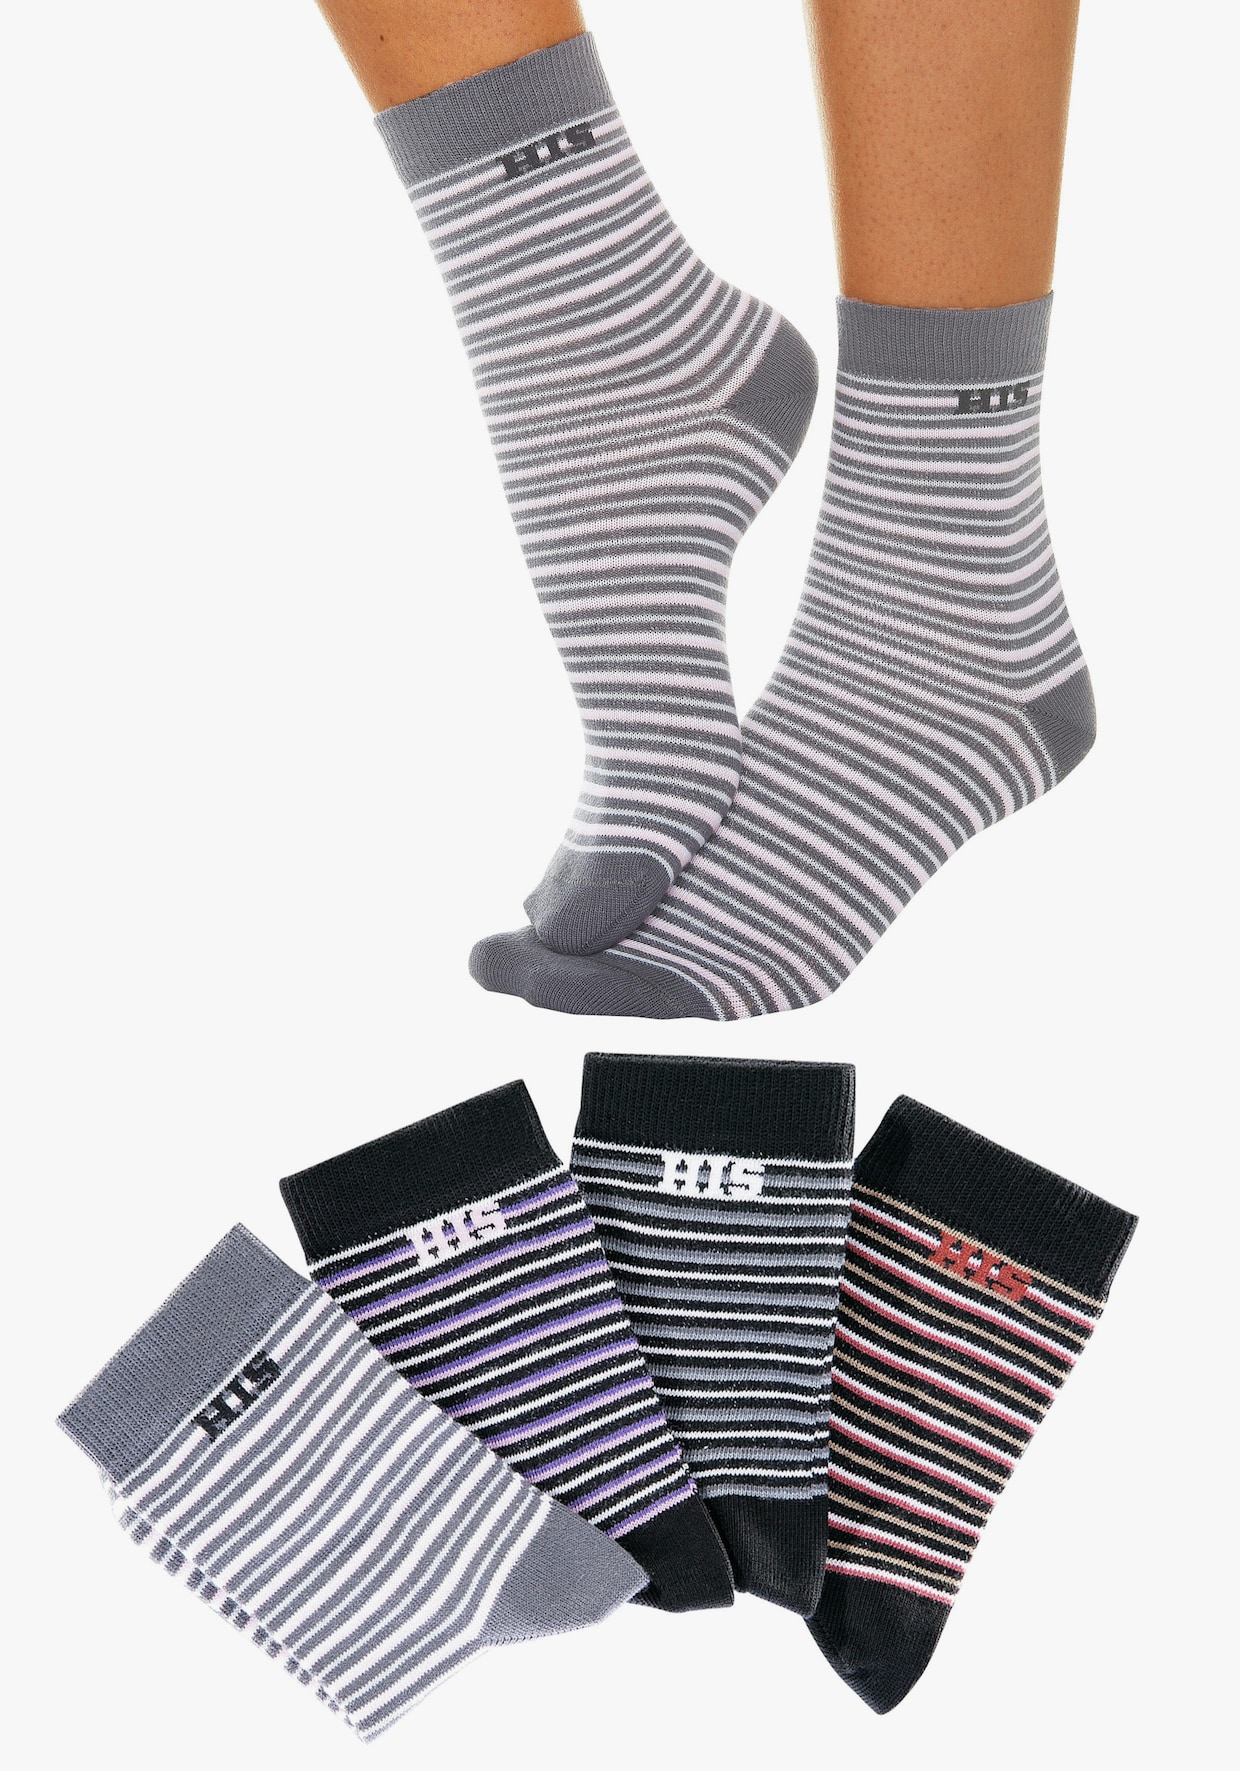 H.I.S chaussettes basiques - gris-noir, gris foncé-noir, gris clair, rouge-noir